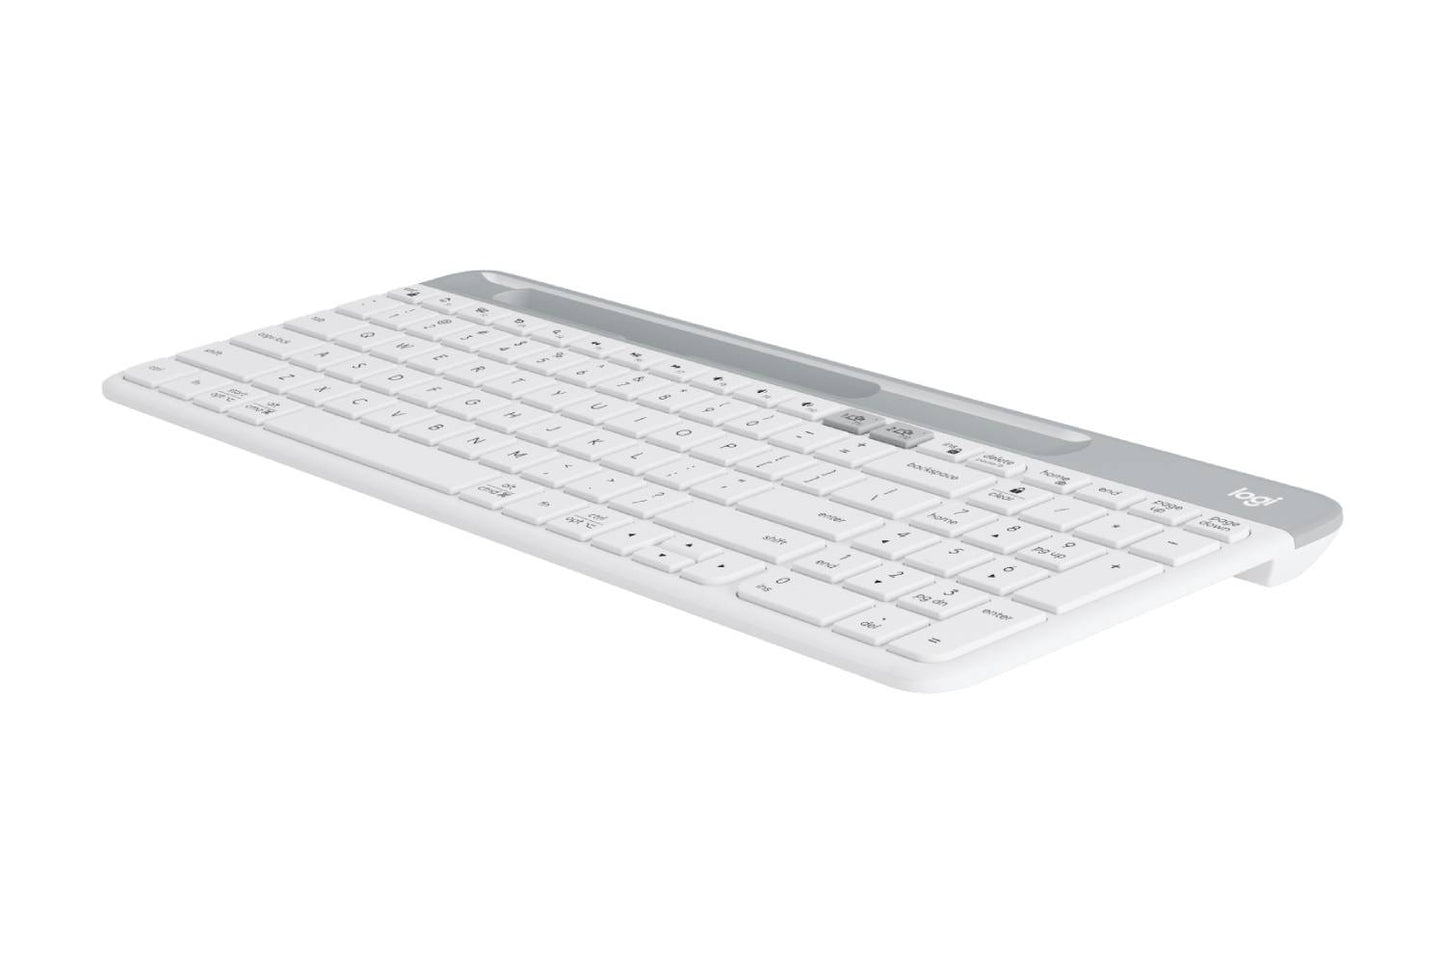 Logitech K580 SLIM MULTI-DEVICE Wireless Keyboard